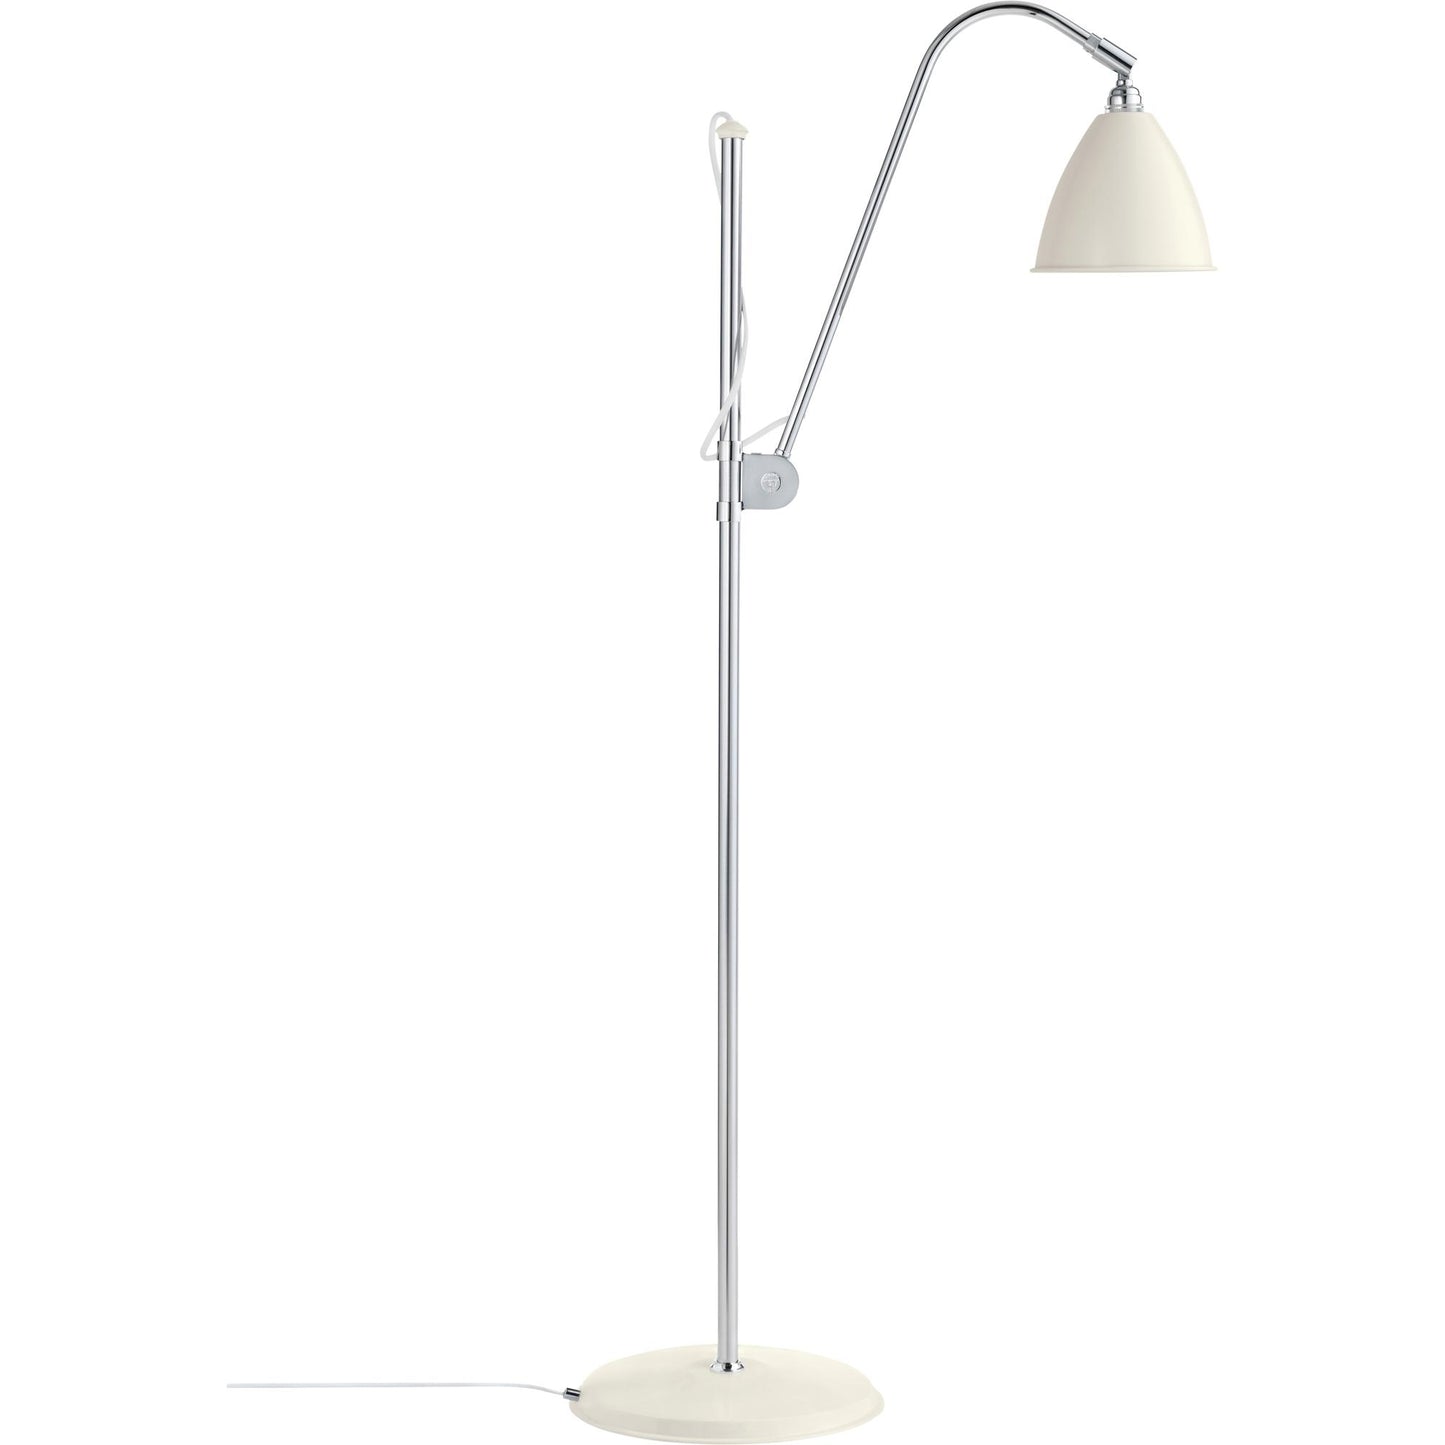 Bestlite BL3S Floor Lamp by GUBI #Chrome / White